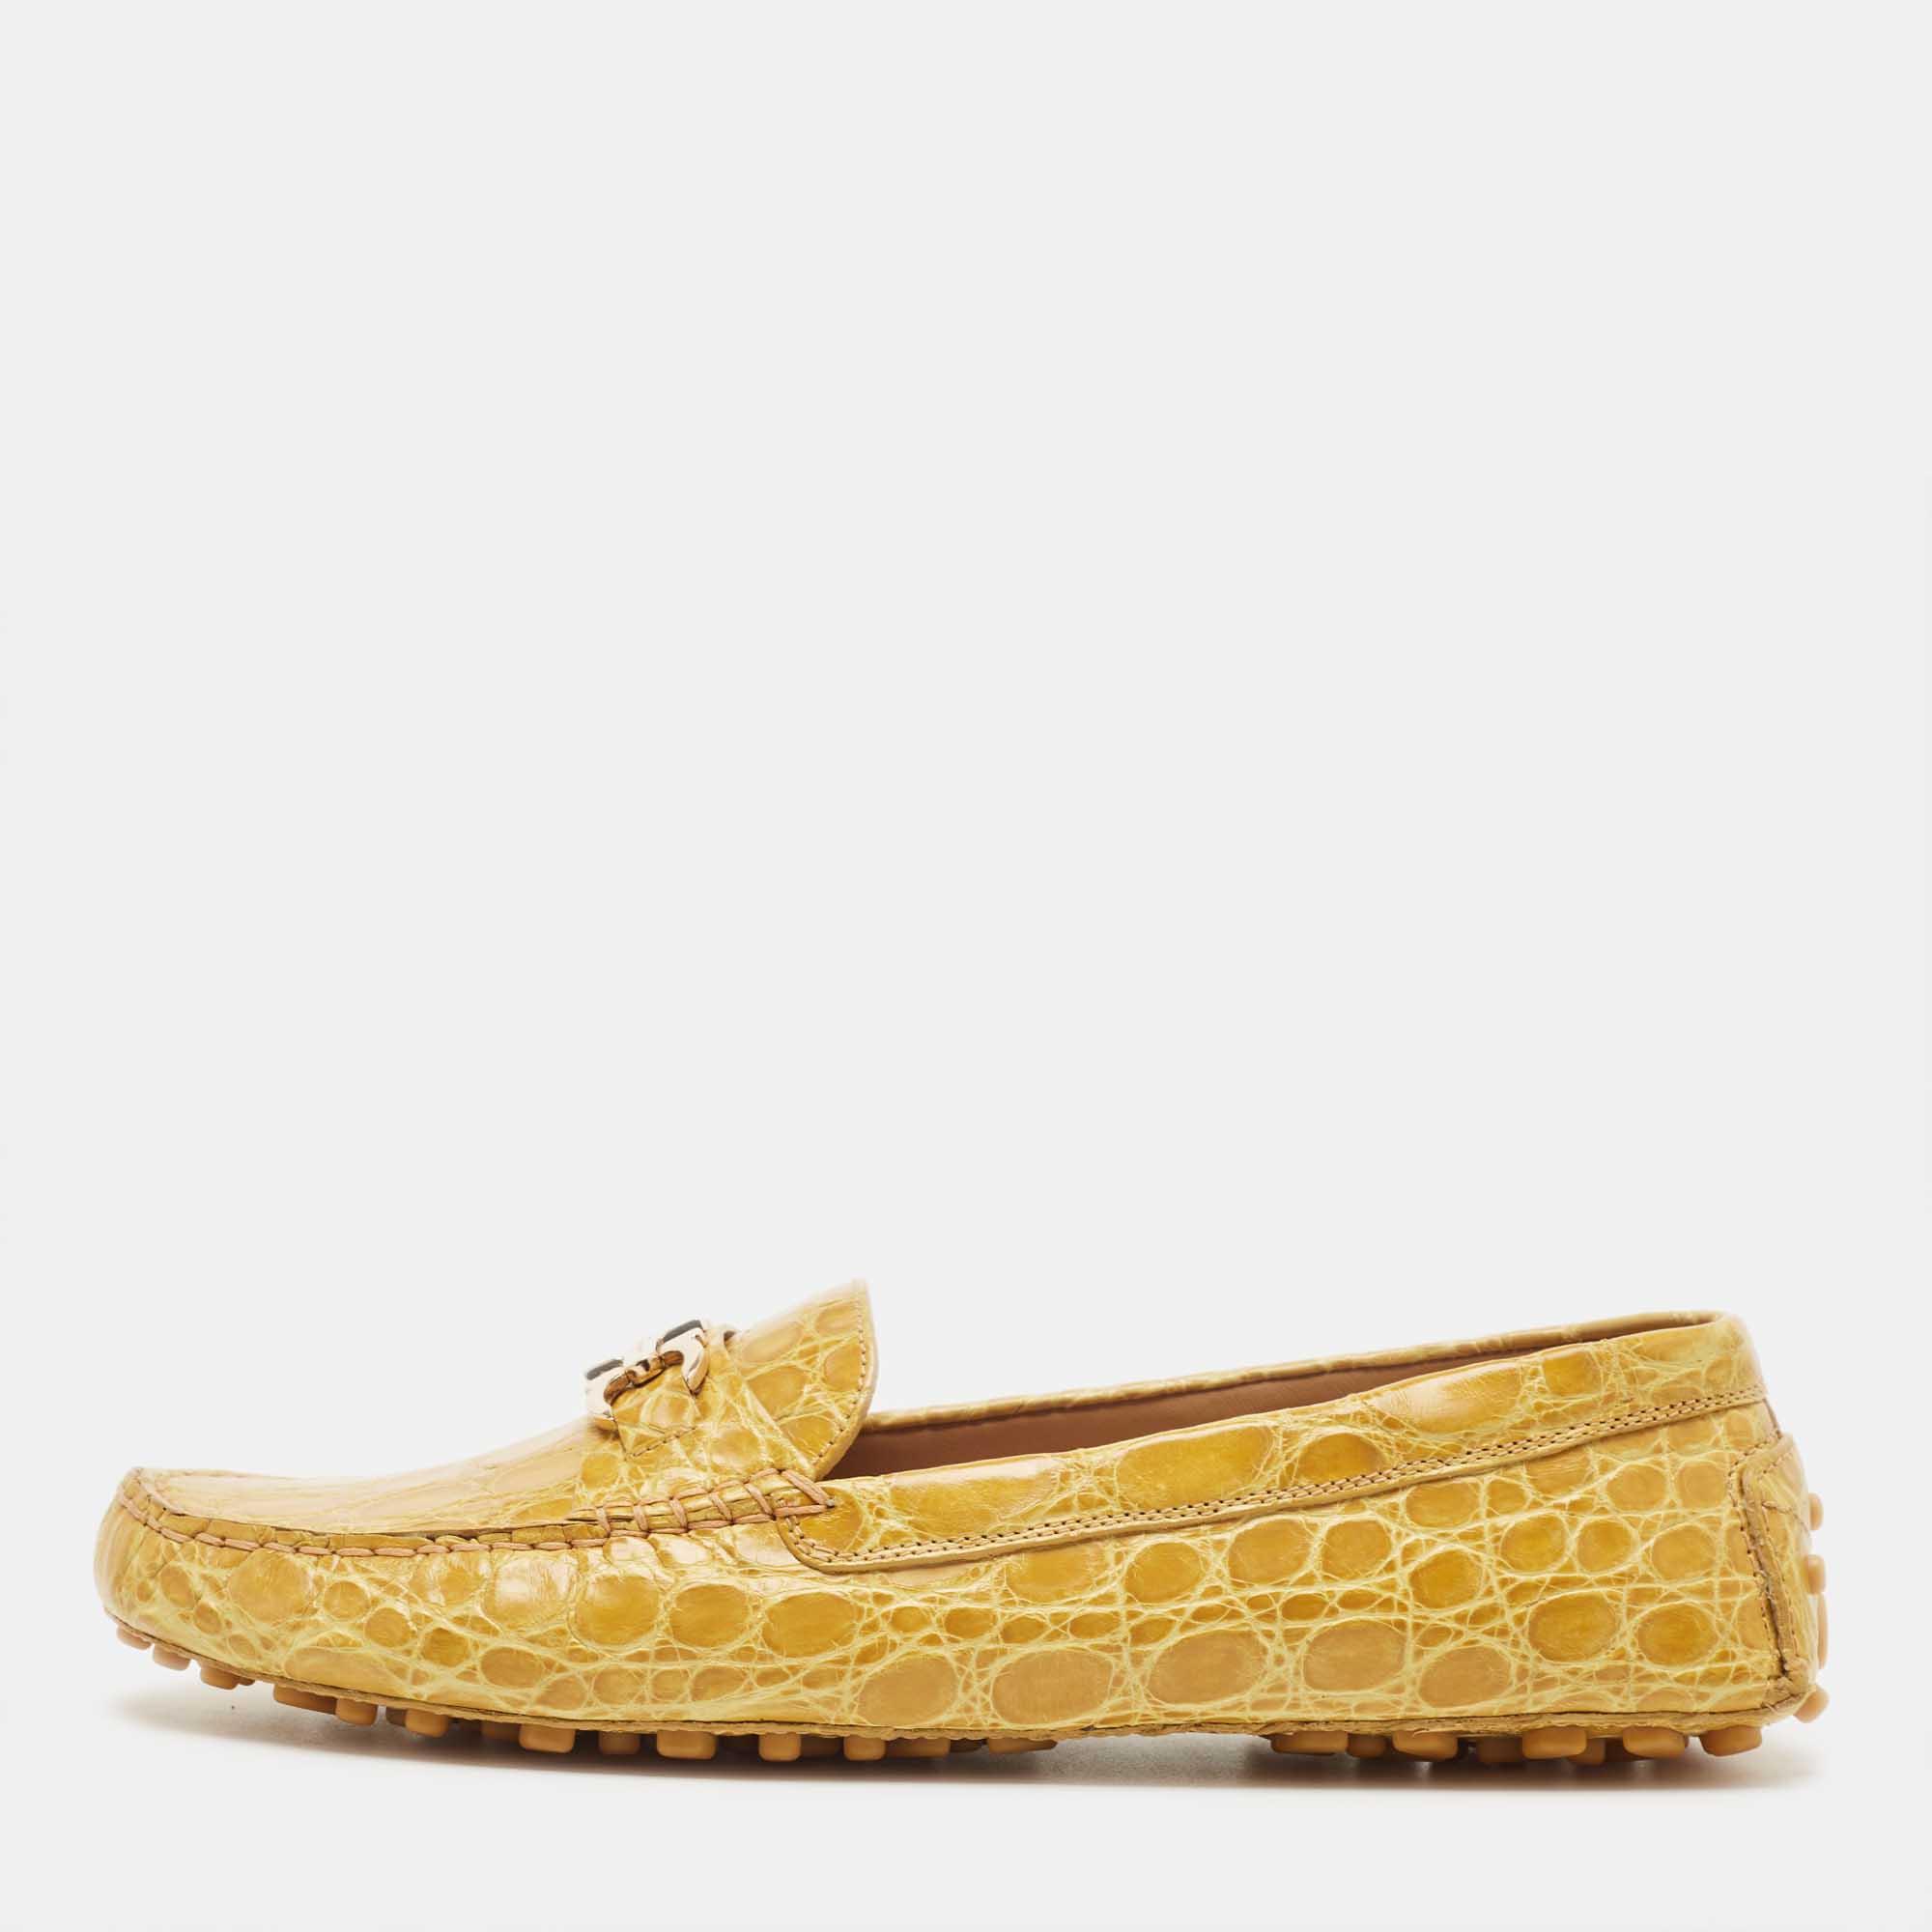 Salvatore ferragamo yellow crocodile vera loafers size 40.5